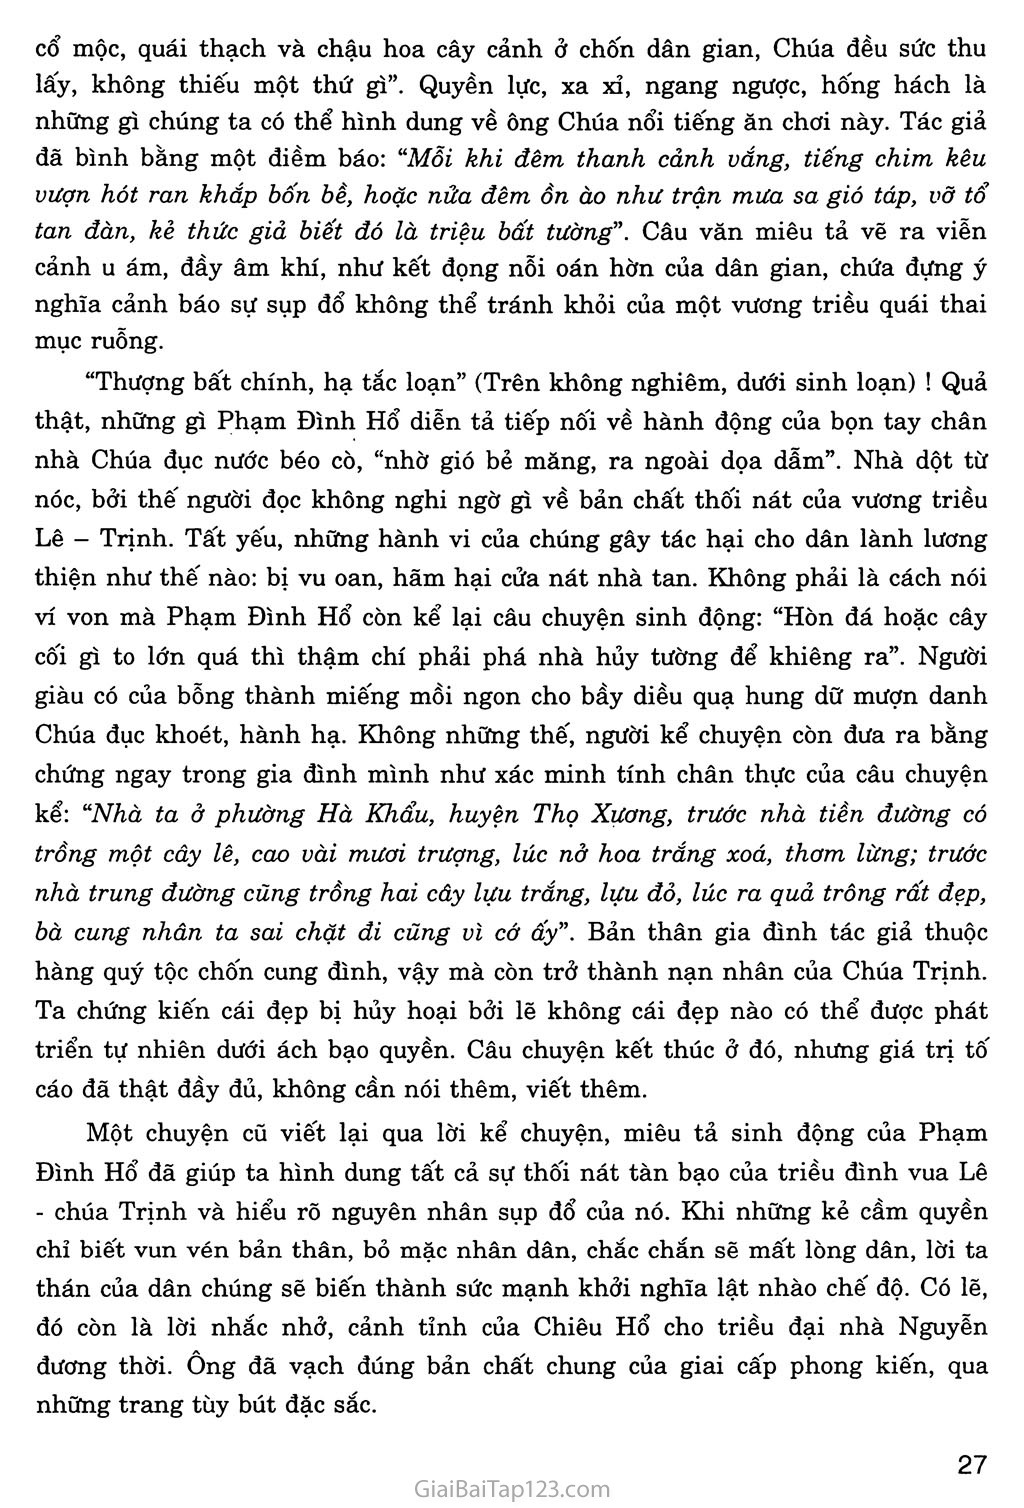 Chuyện cũ trong phủ chúa Trịnh (trích Vũ trung tùy bút) trang 6